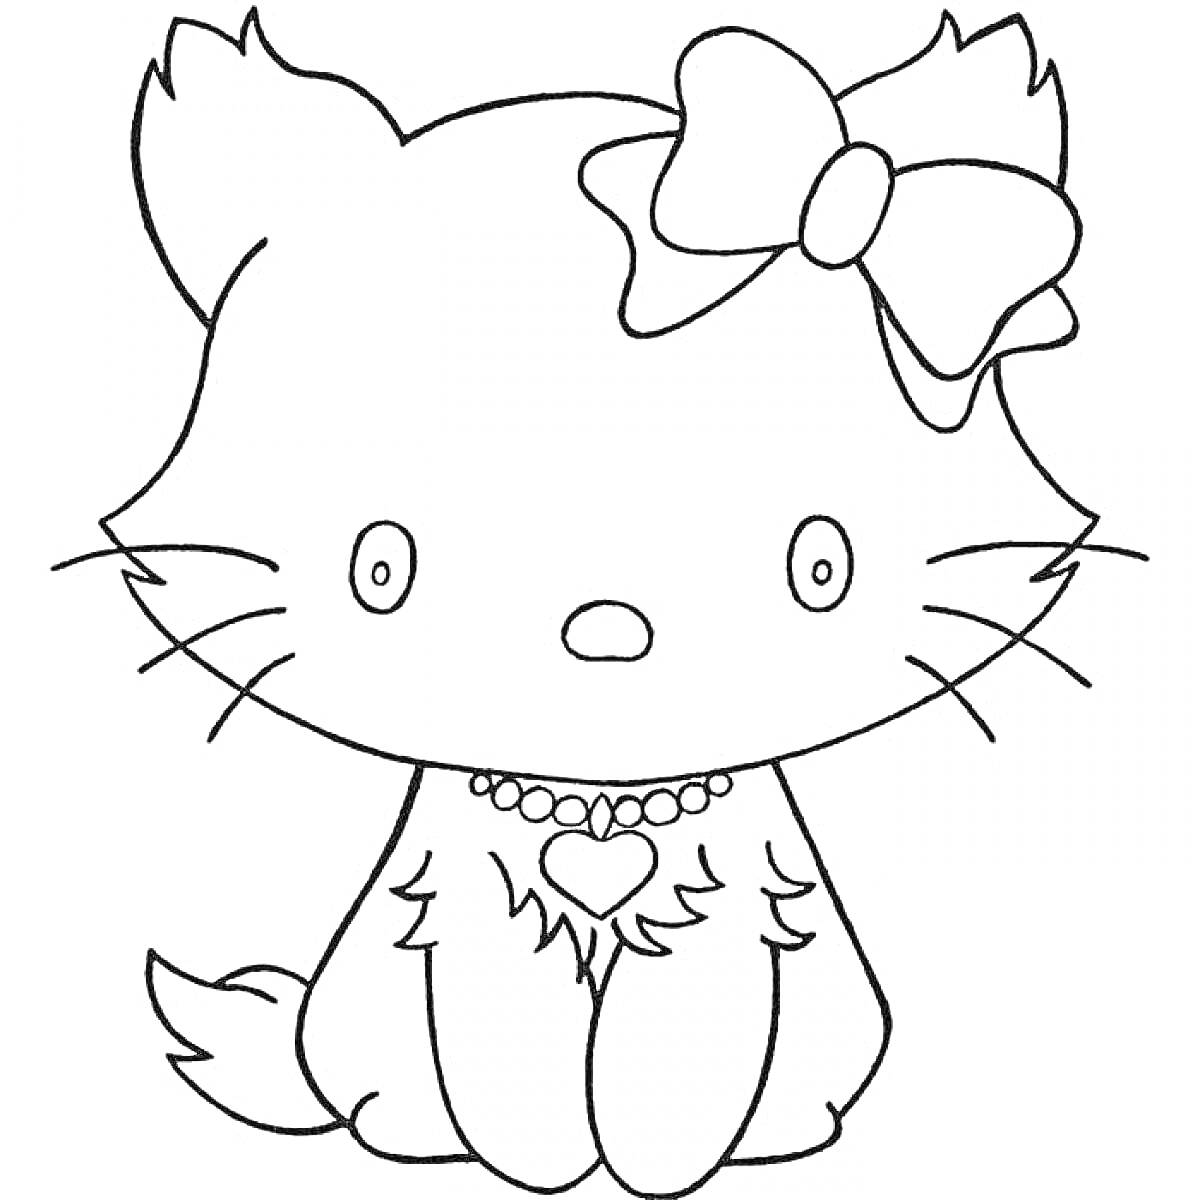 Раскраска Кошка с бантиком и ожерельем в виде сердца